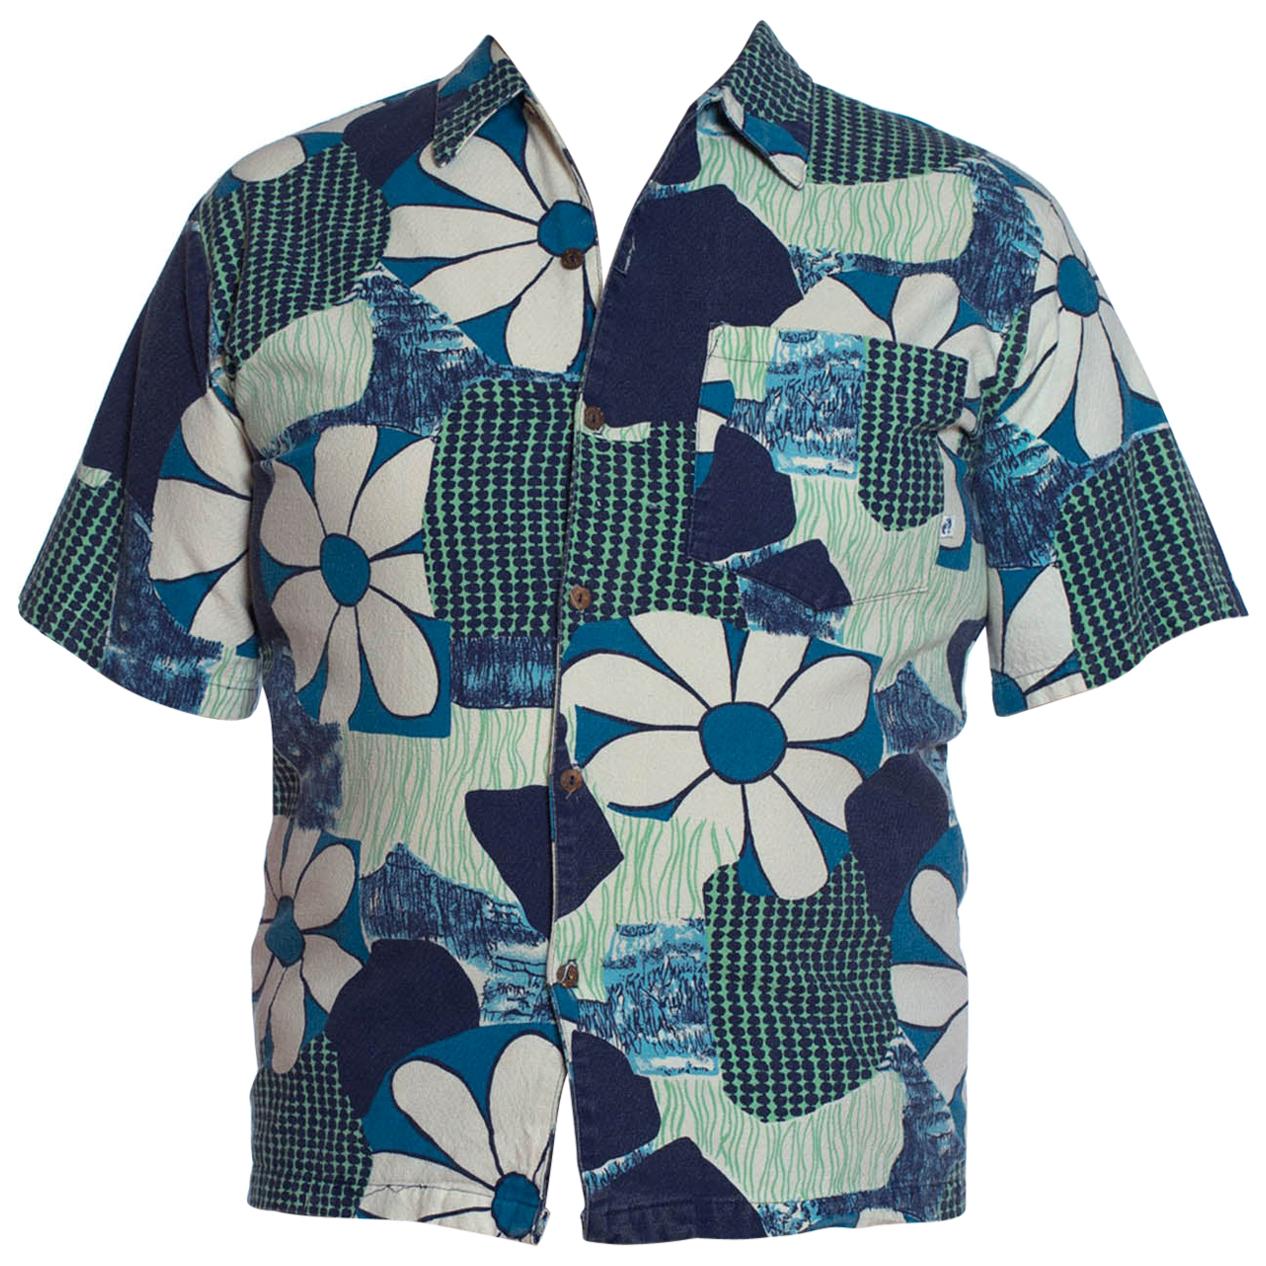 1960S Blue & White Cotton Tropical Mod Men’S Shirt